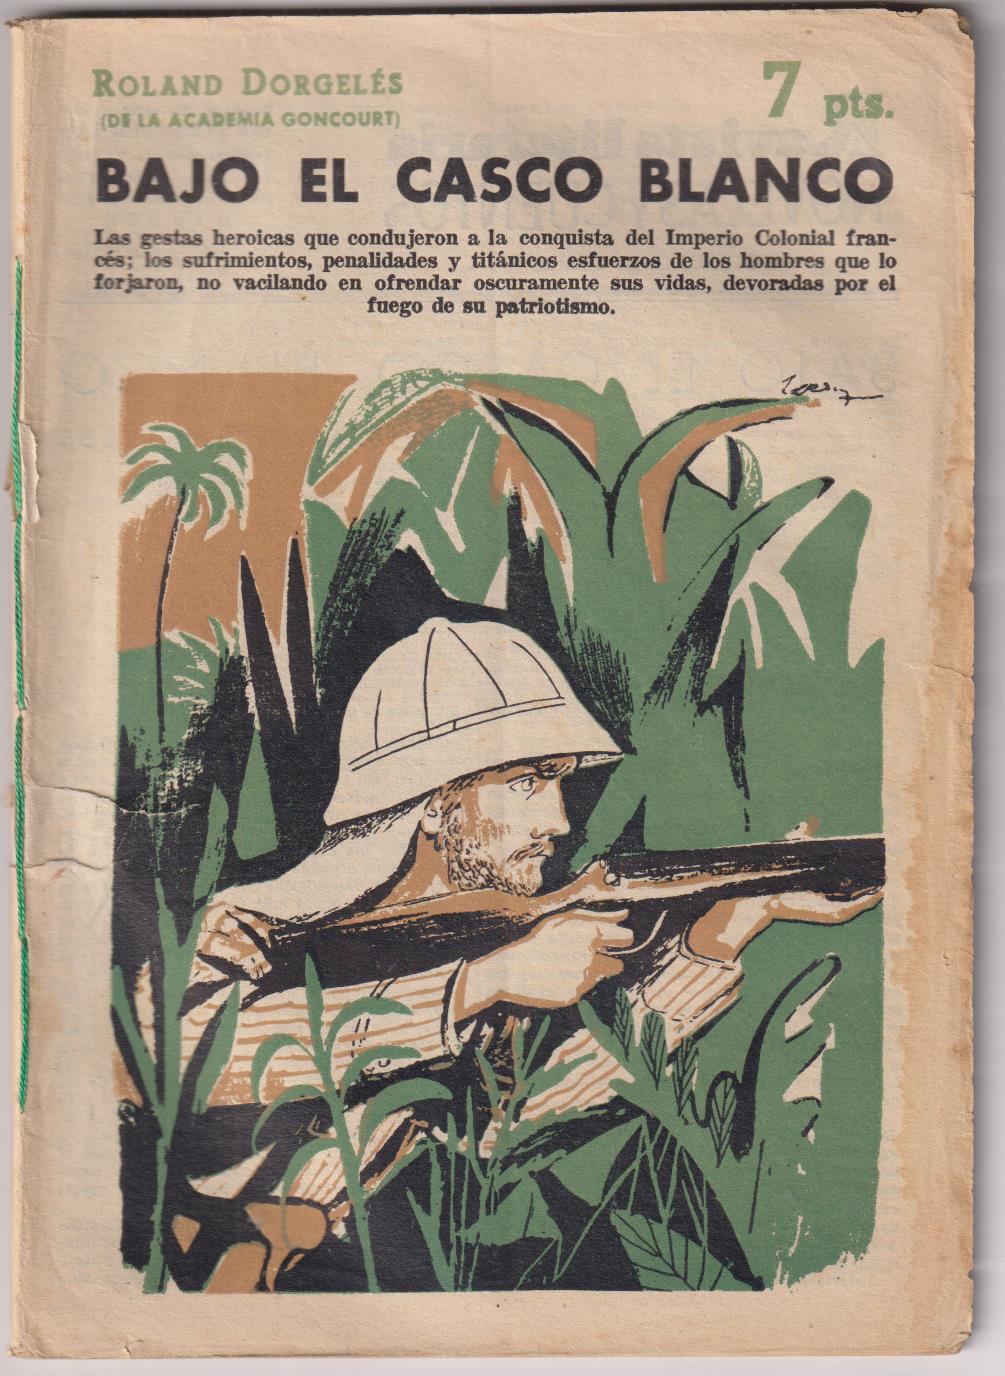 Revista Literaria Novelas y Cuentos nº 1537. Bajo el casco blanco por Rolamd Dorgelés, 1960